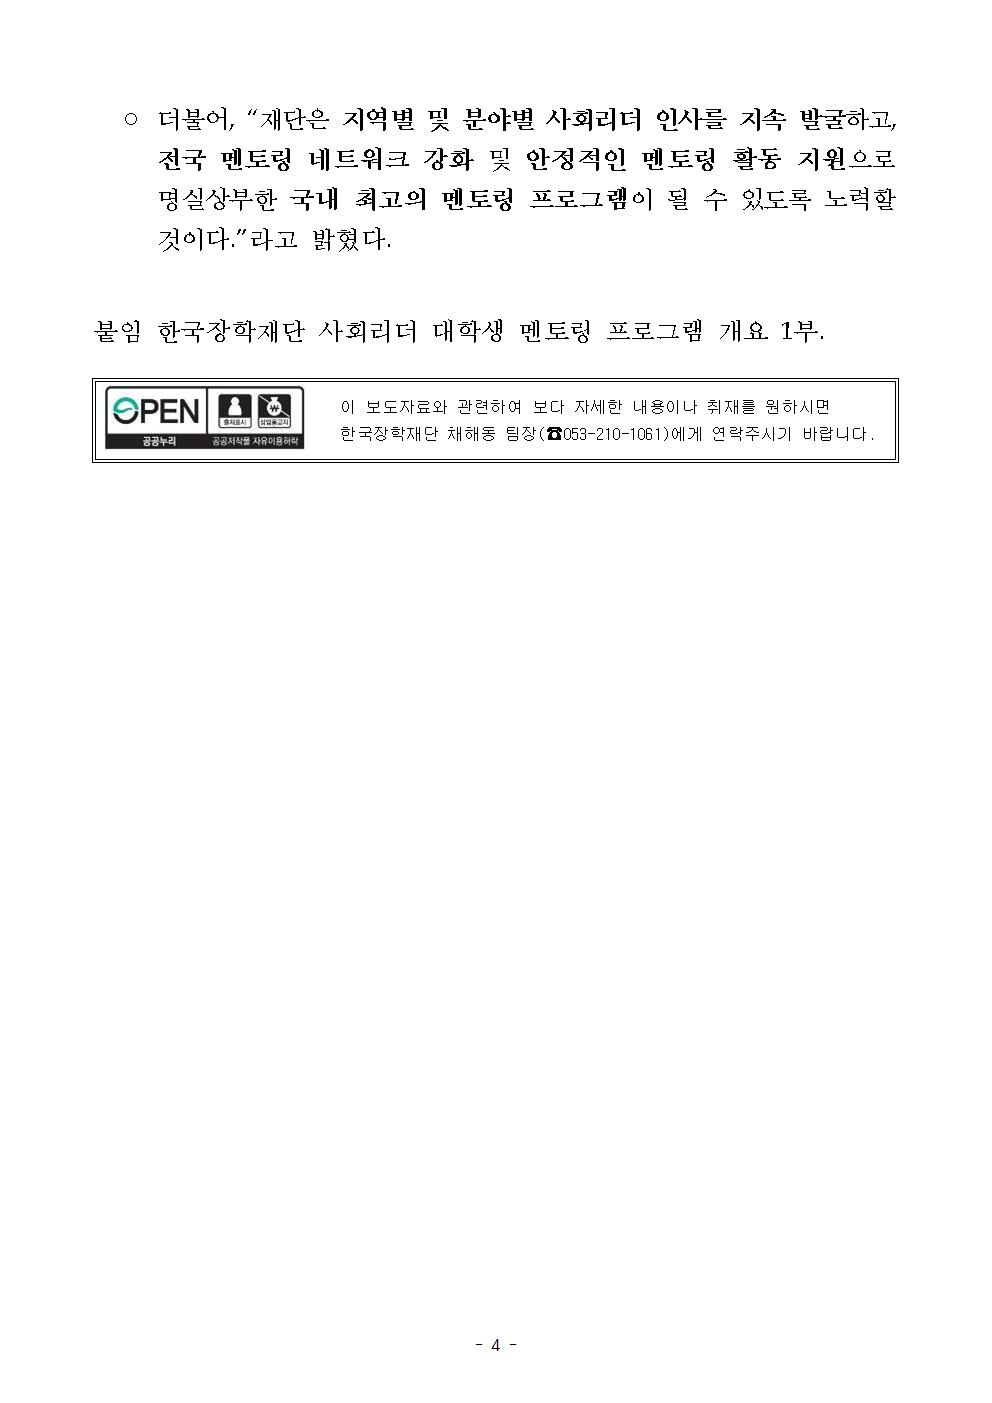 04-15(월)[보도자료] 한국장학재단, 사회리더 대학생 멘토링 발대식 개최004.jpg